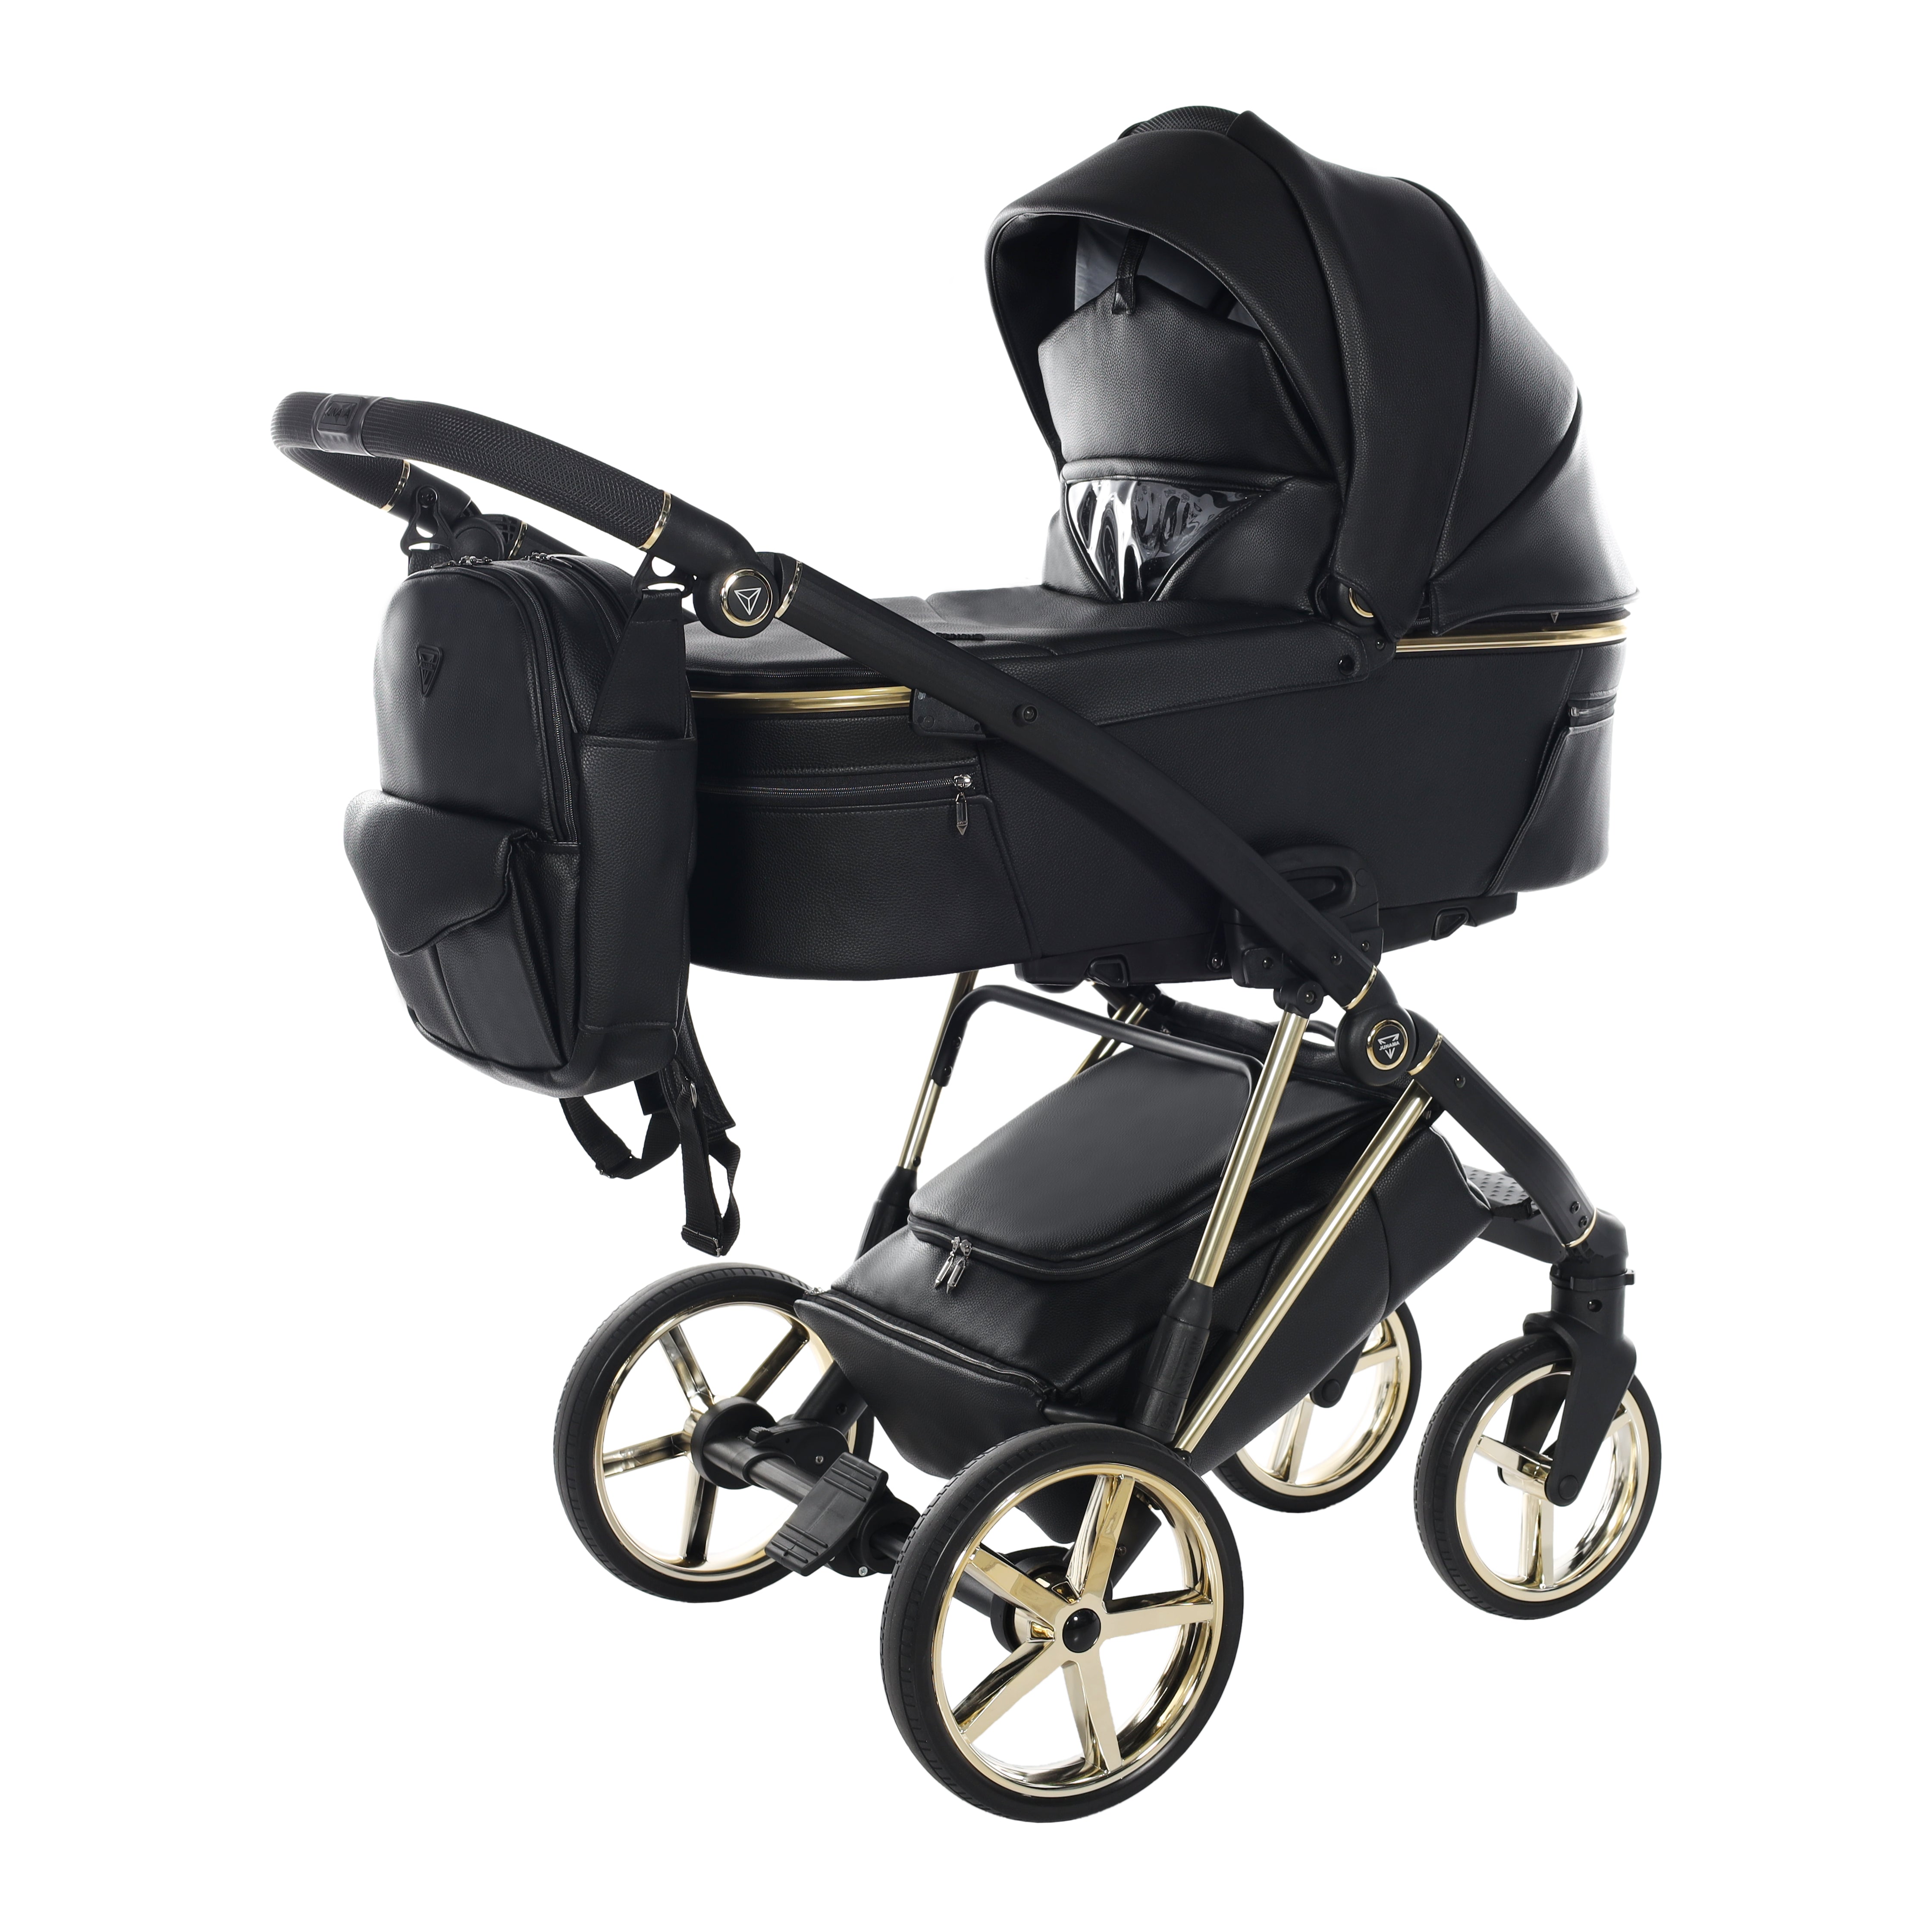 Junama AIR Premium V3, baby stroller and bassinet 2 in 1 - BLACK , Code number: JUNAIRP03